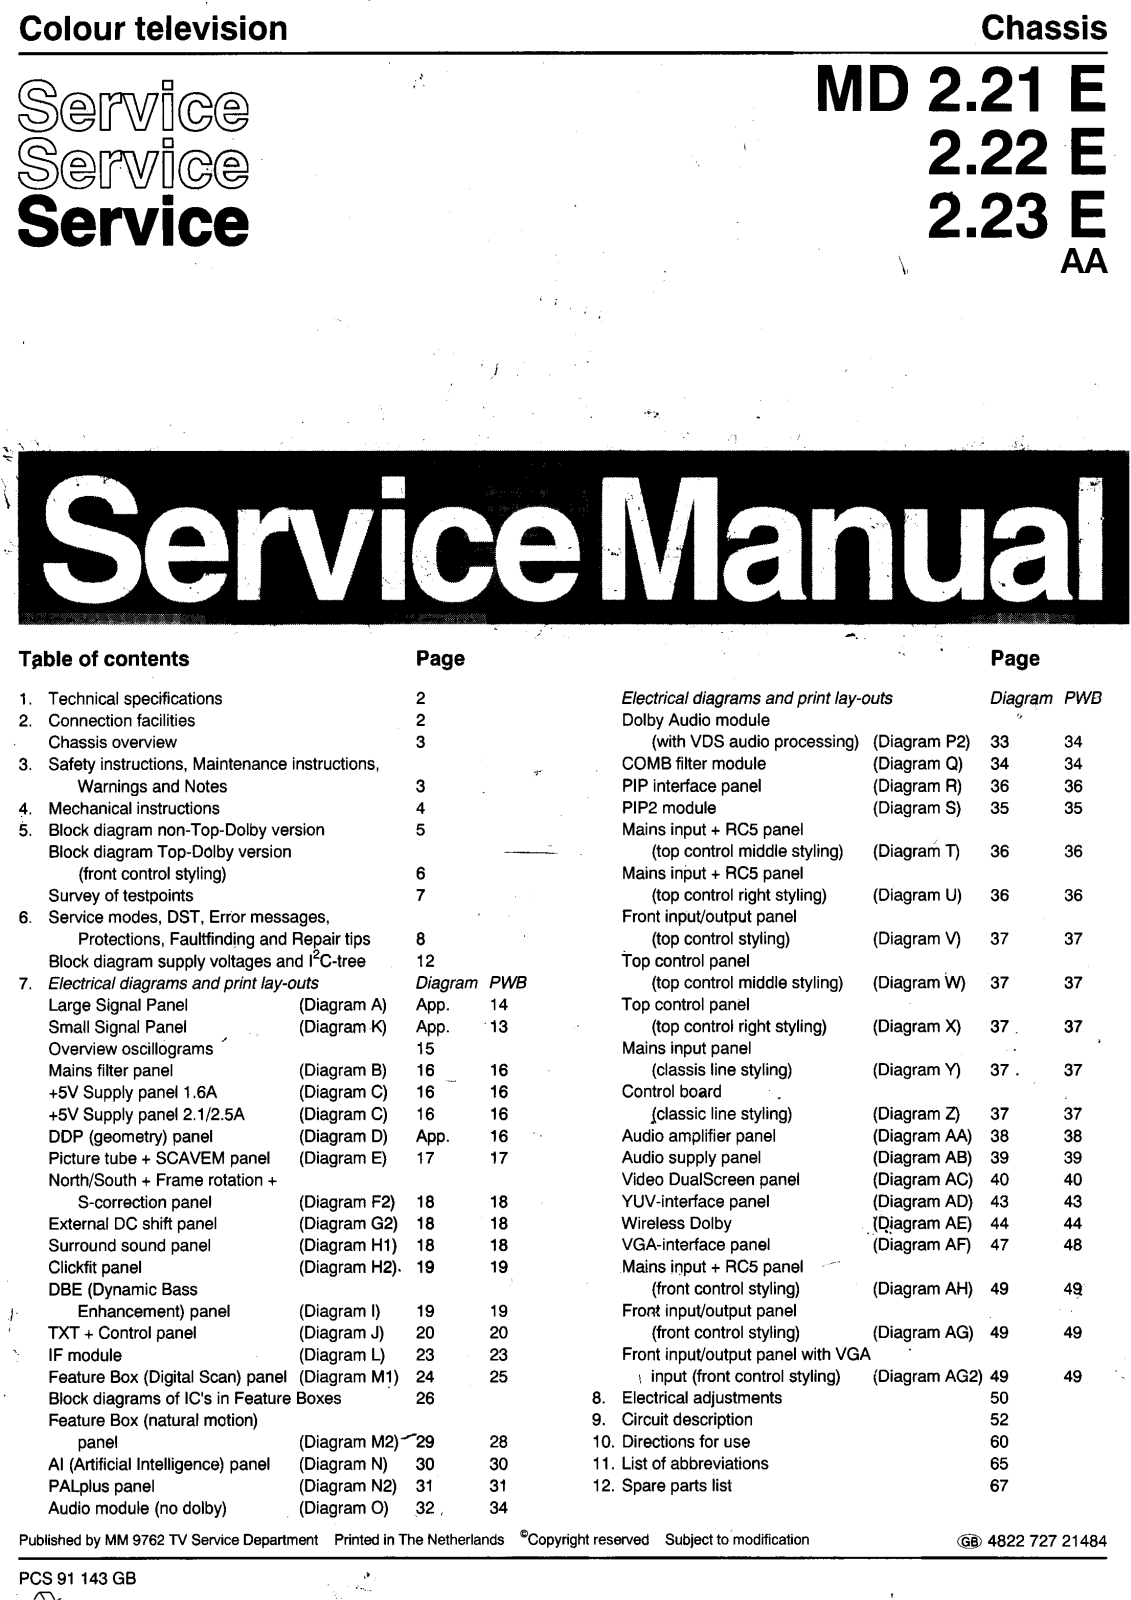 Philips MD 2.23 E, MD 2.22 E, MD 2.21 E Service Manual